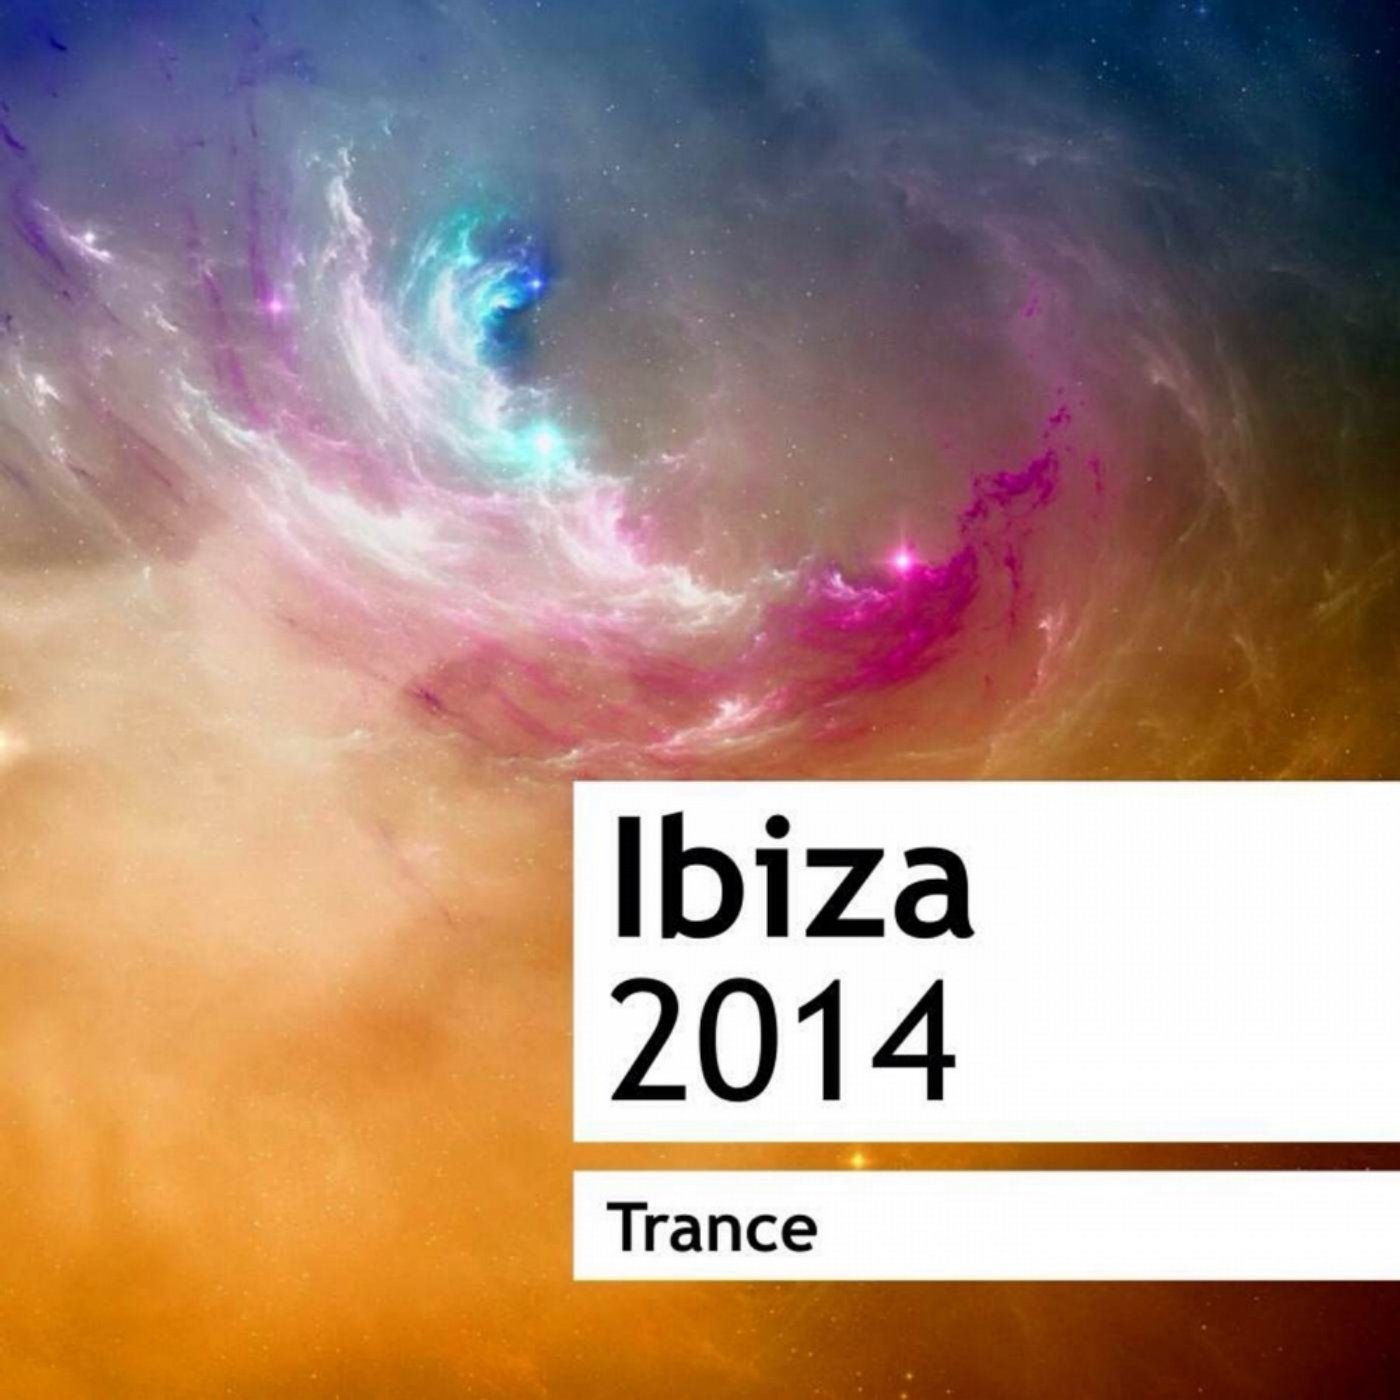 Ibiza 2014 Trance